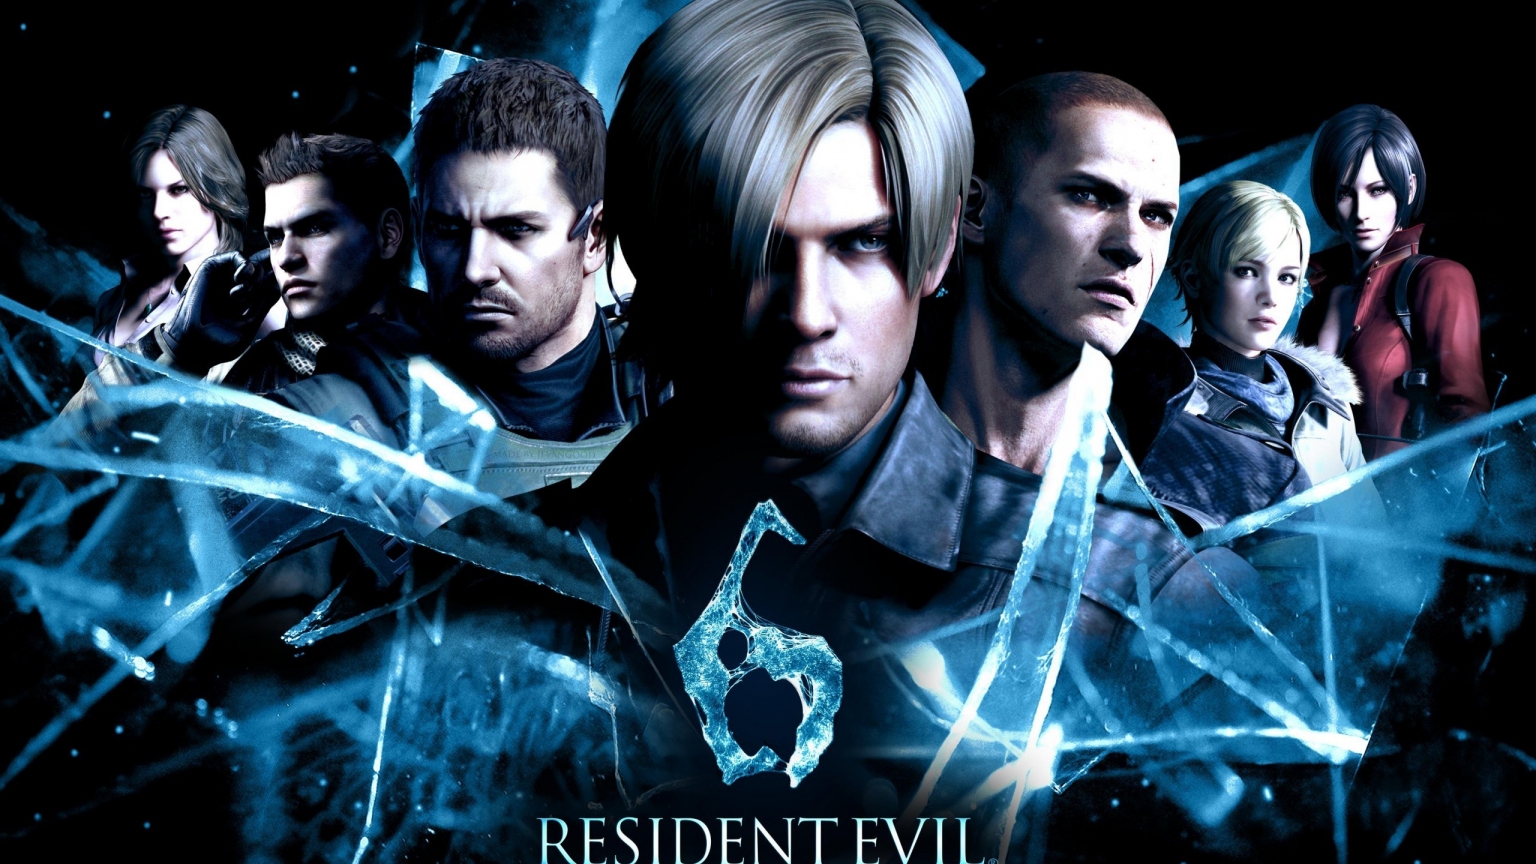 Resident Evil 6 2014 for 1536 x 864 HDTV resolution